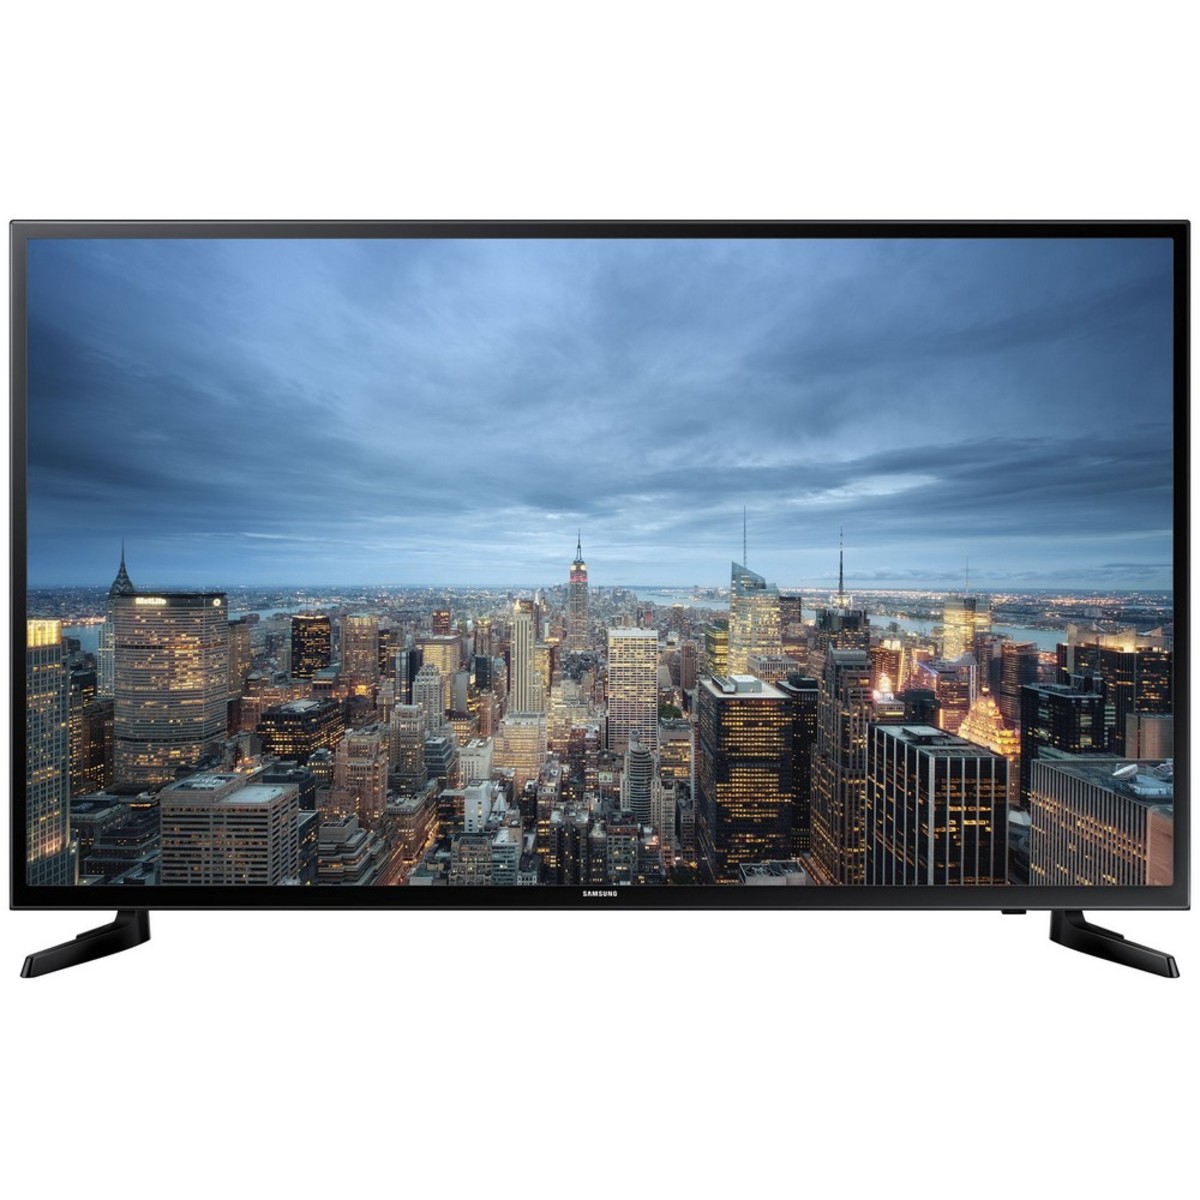 Samsung Ultra HD Smart LED TV UA40JU6000 40inch